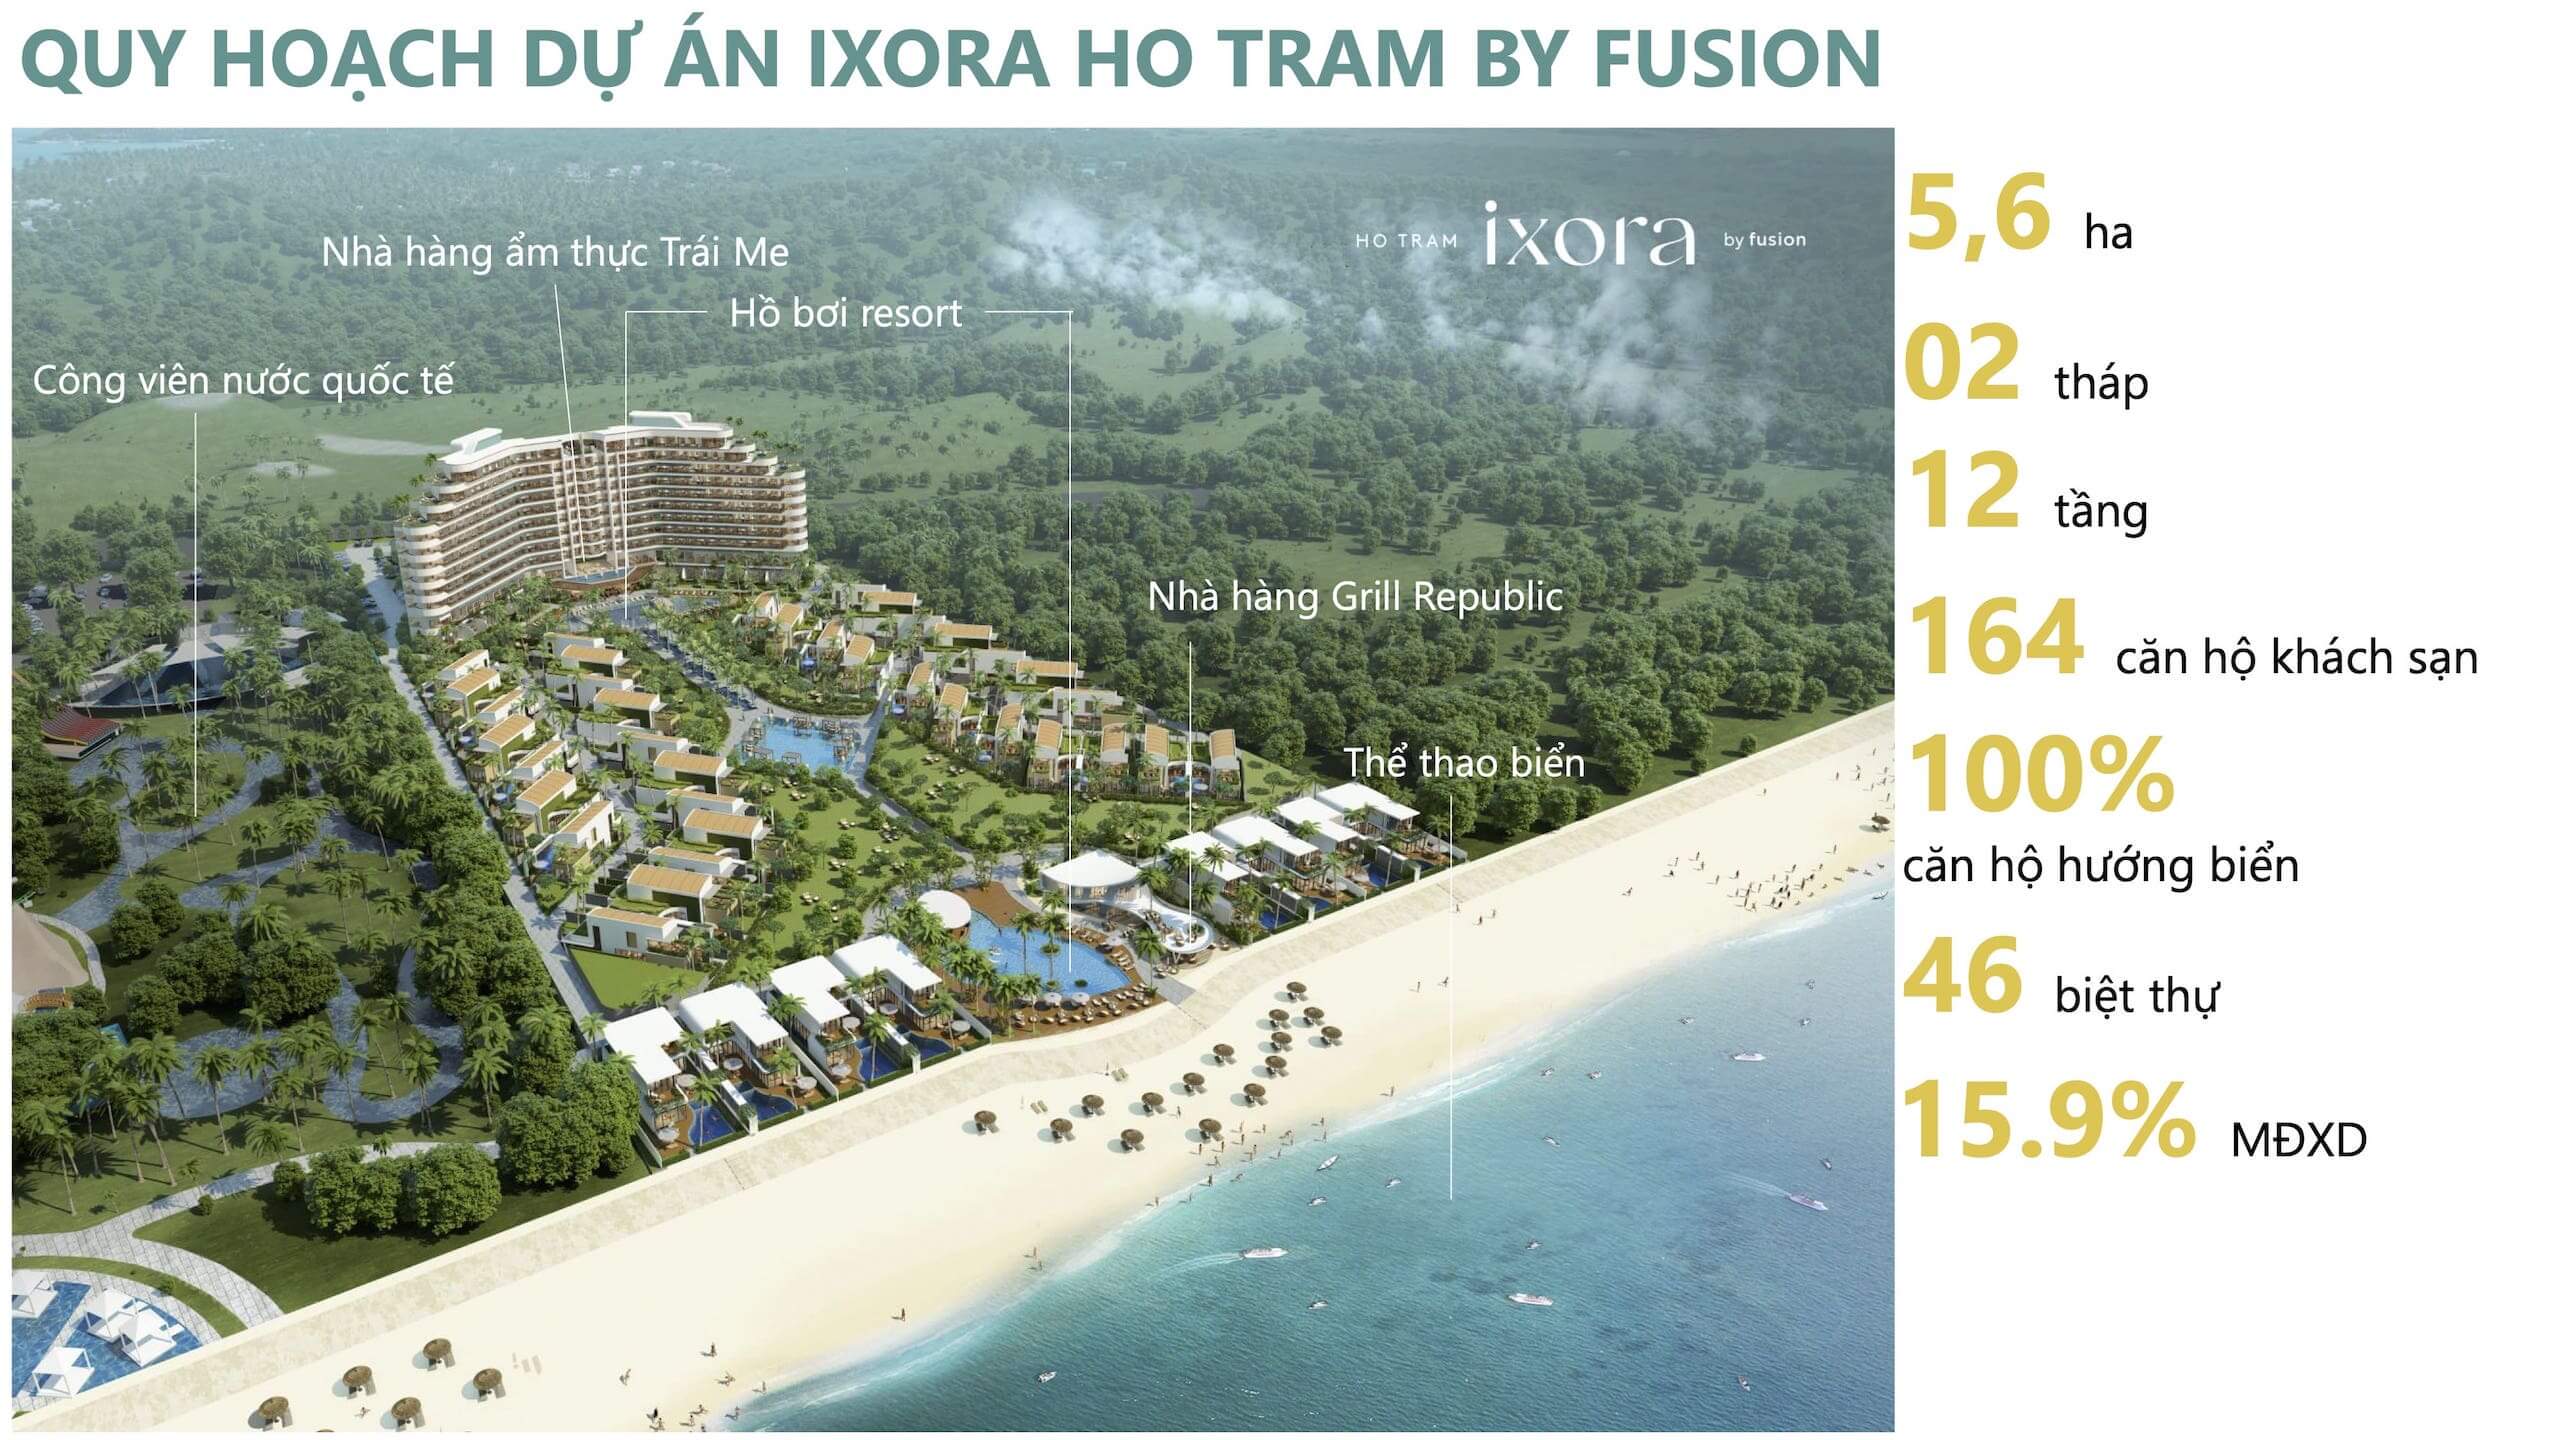 quy mô dự án nghỉ dưỡng Ixora Ho tram by Fusion